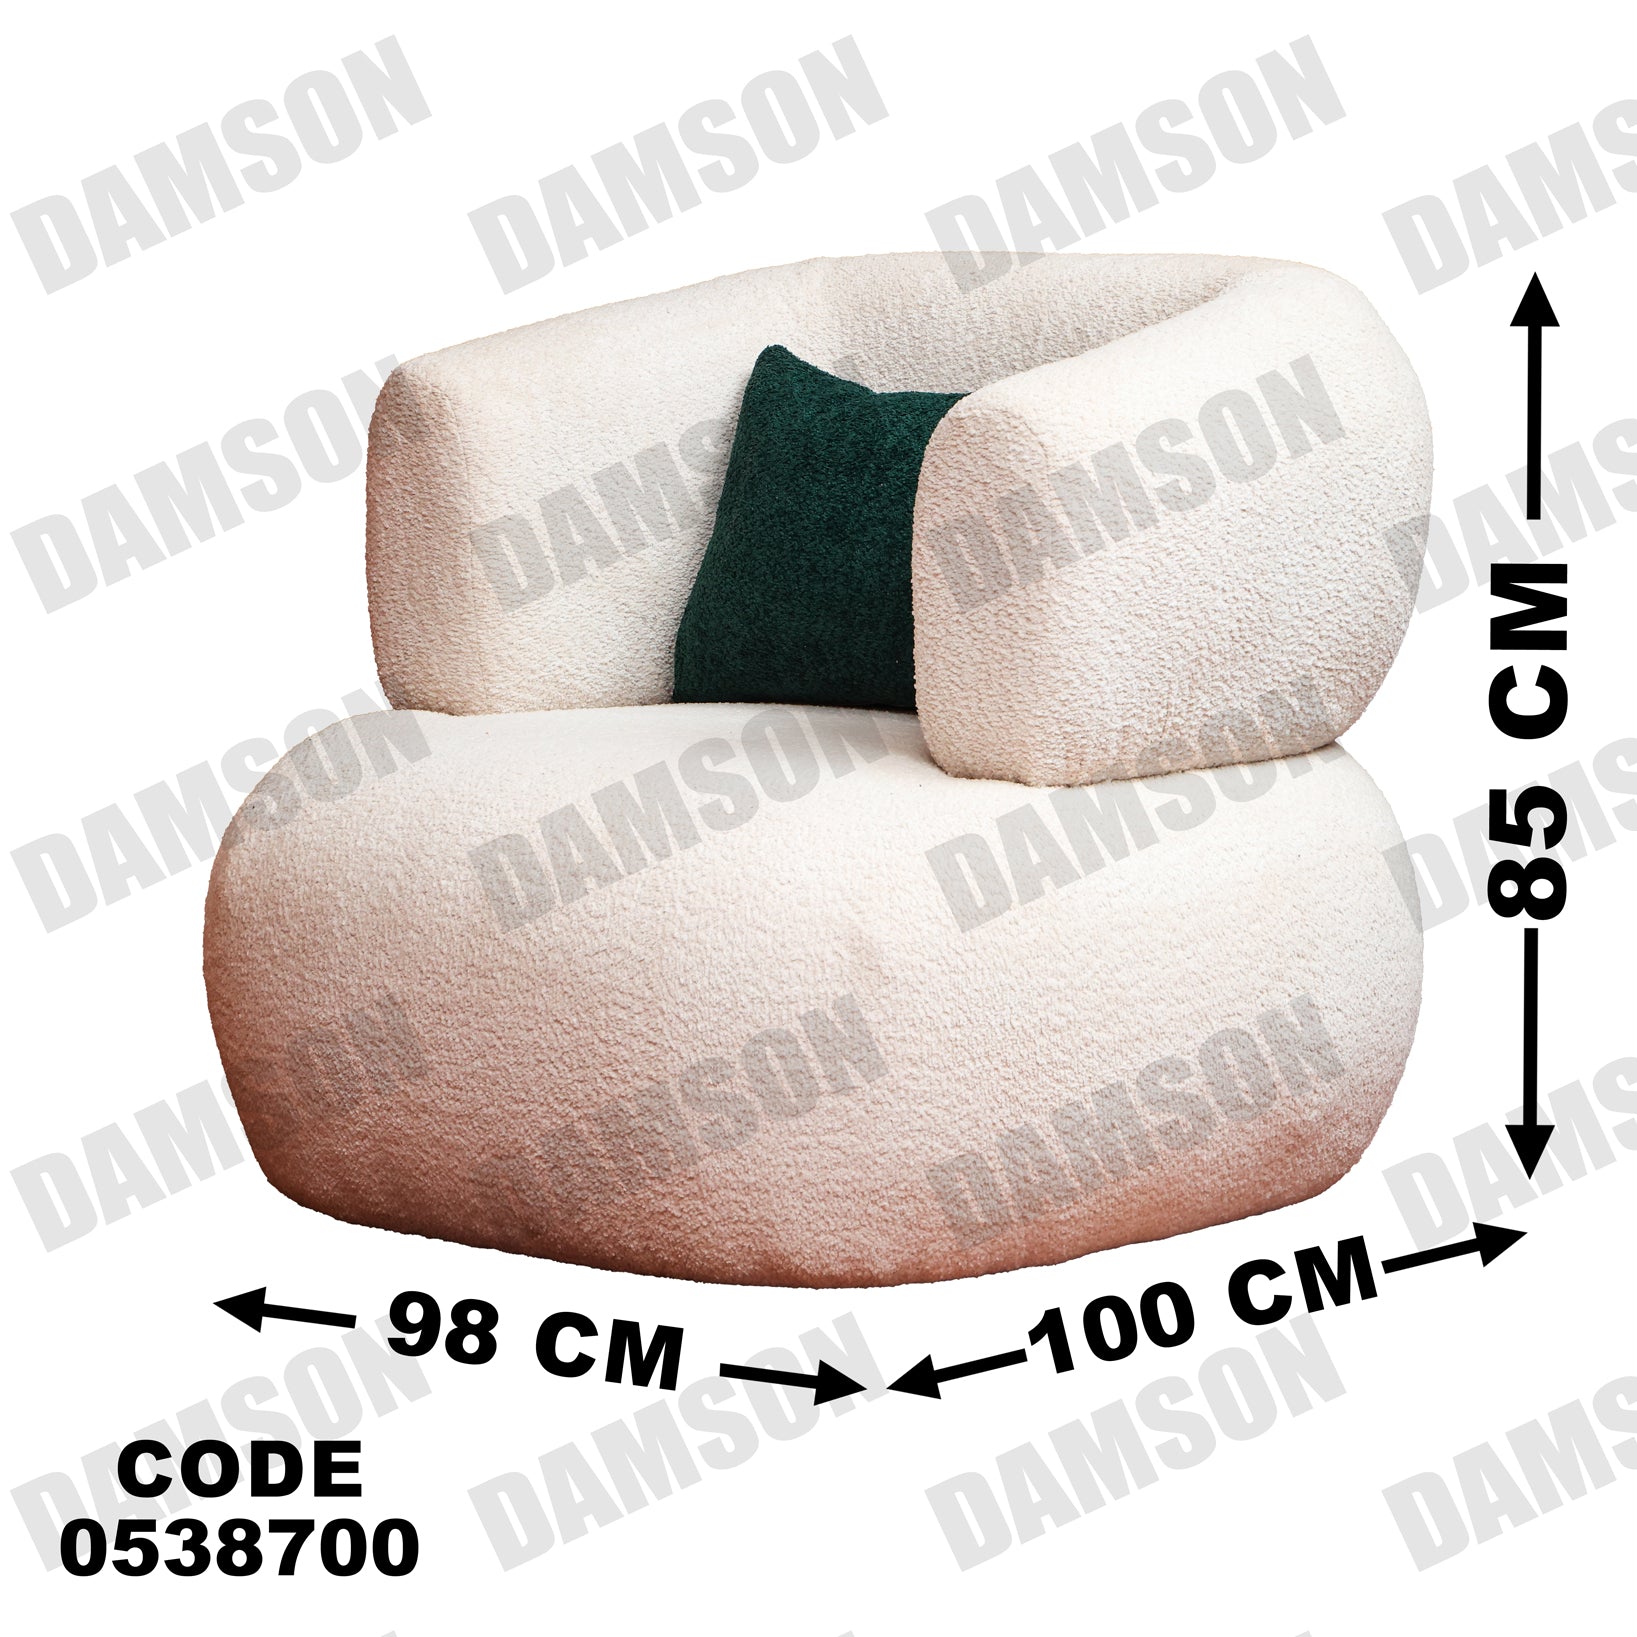 فوتية 2-387 - Damson Furnitureفوتية 2-387